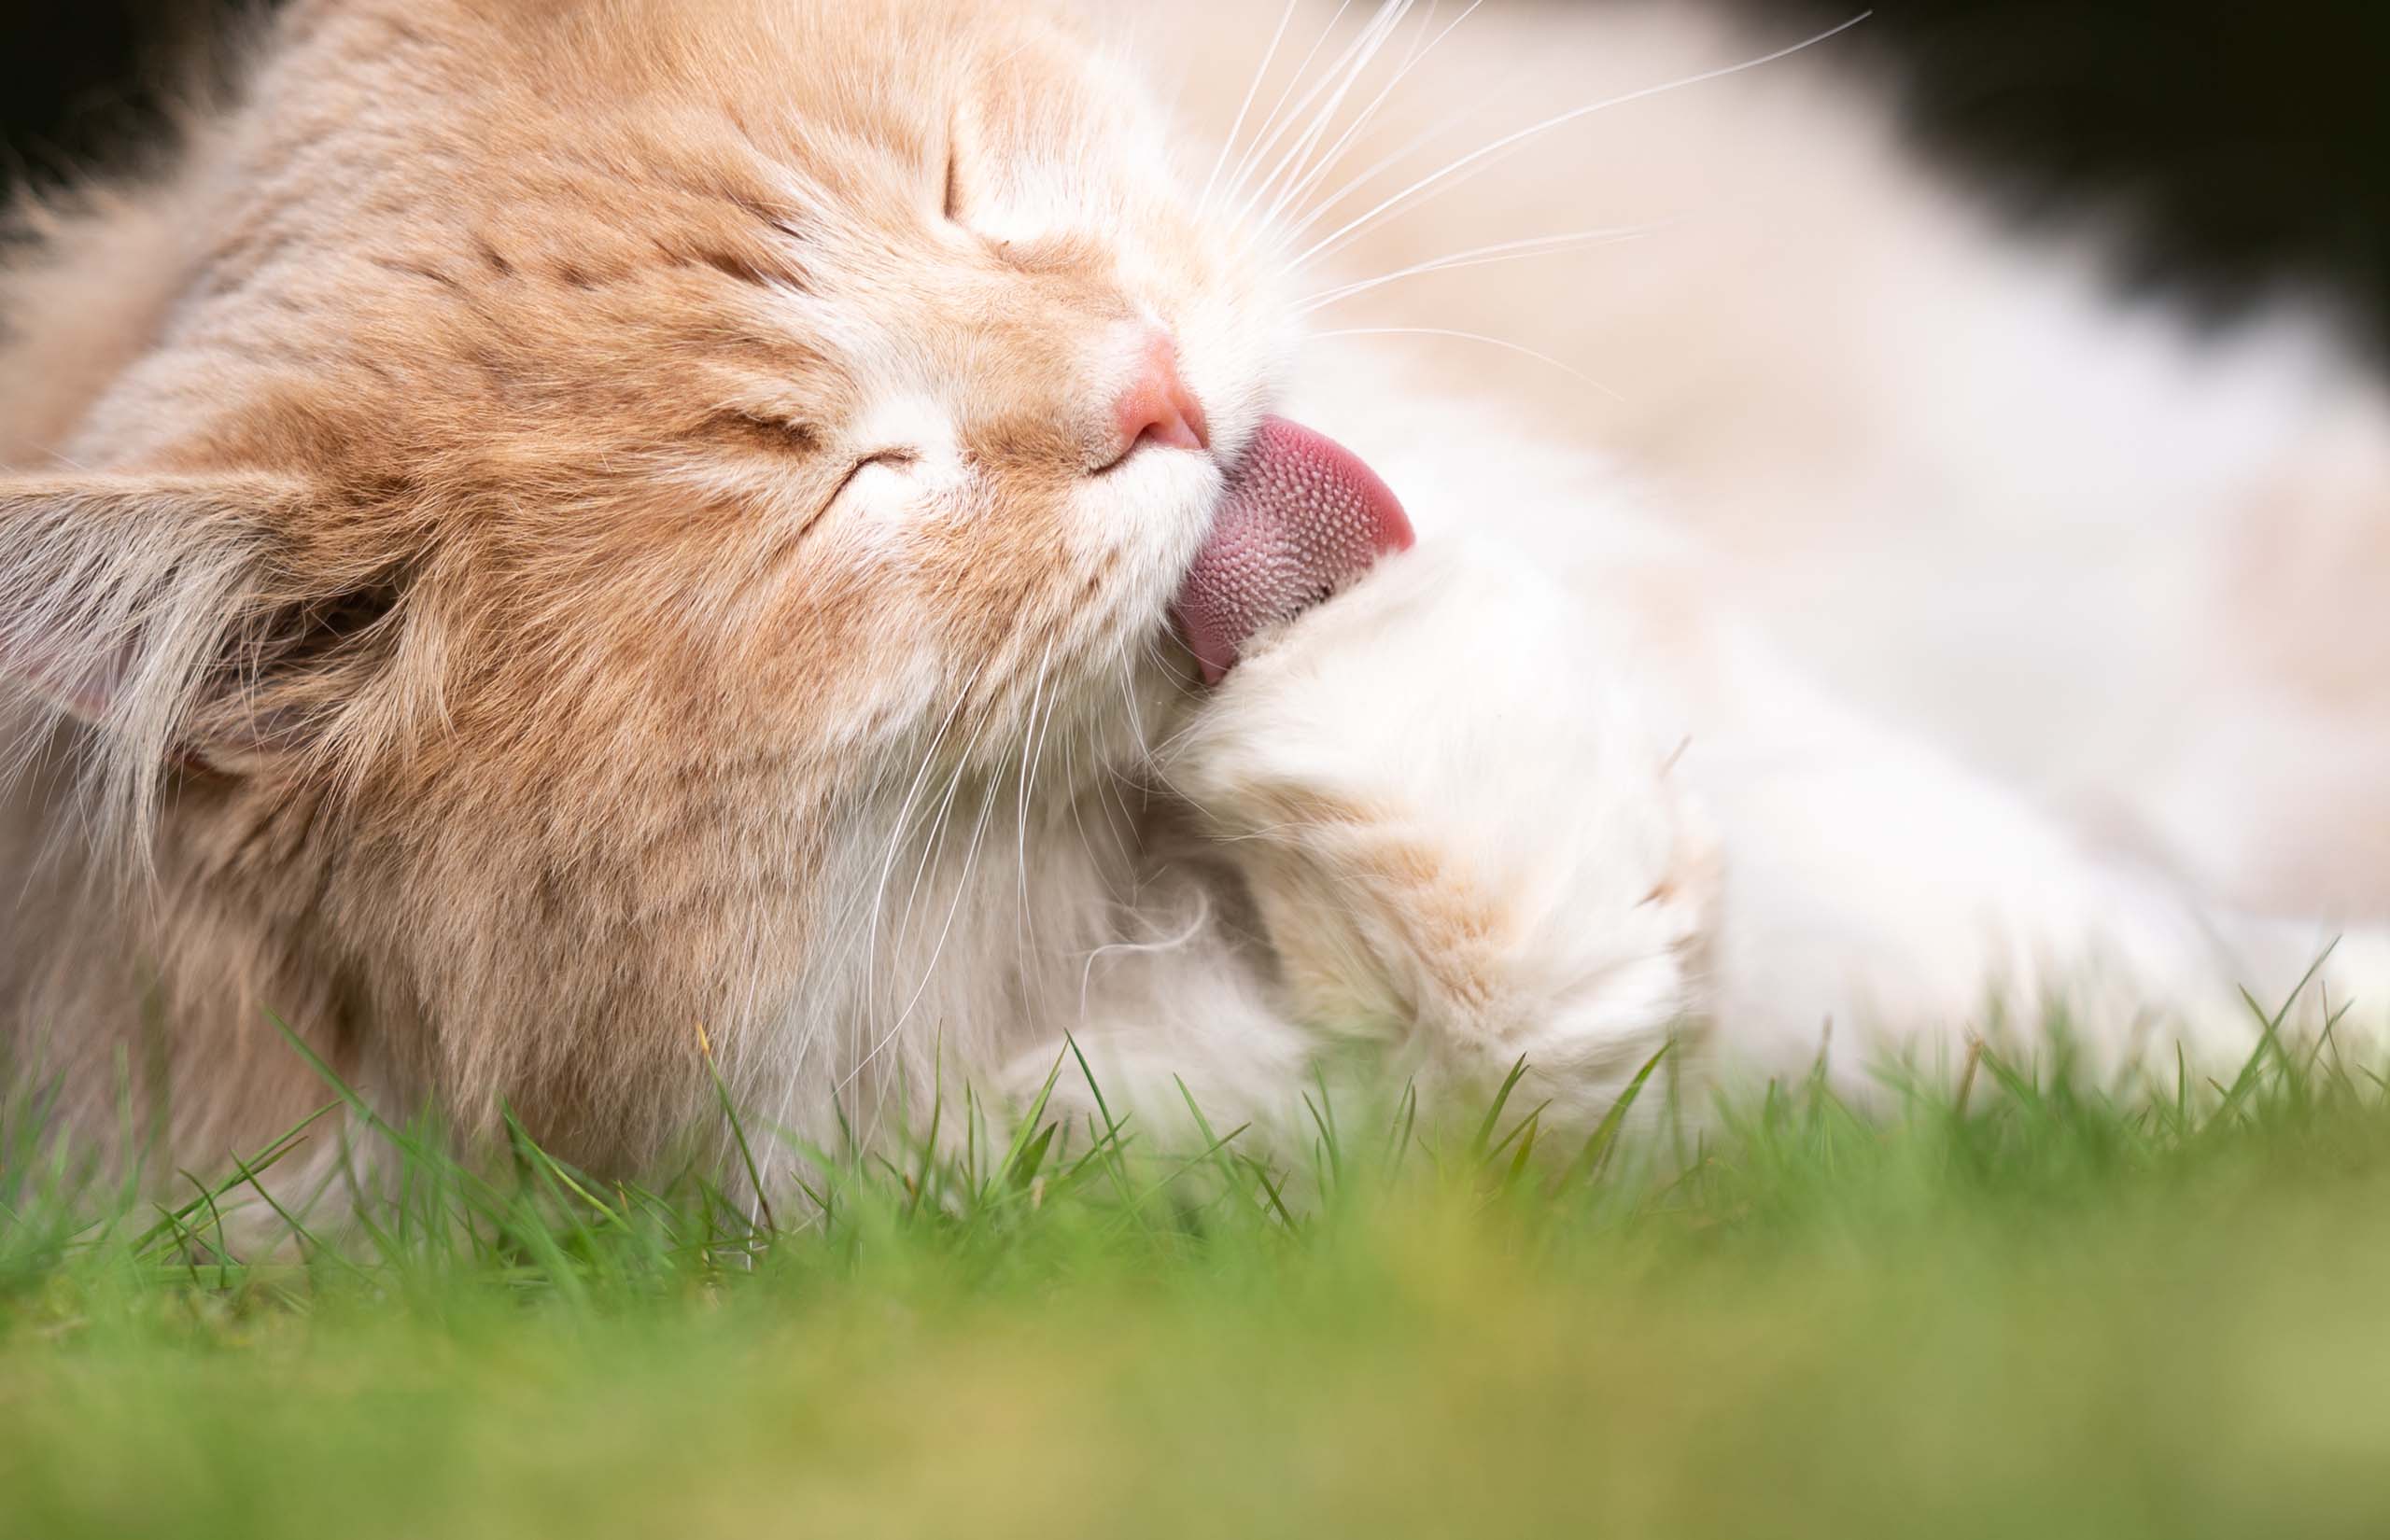 Pourquoi les chats crachent-ils des boules de poils?